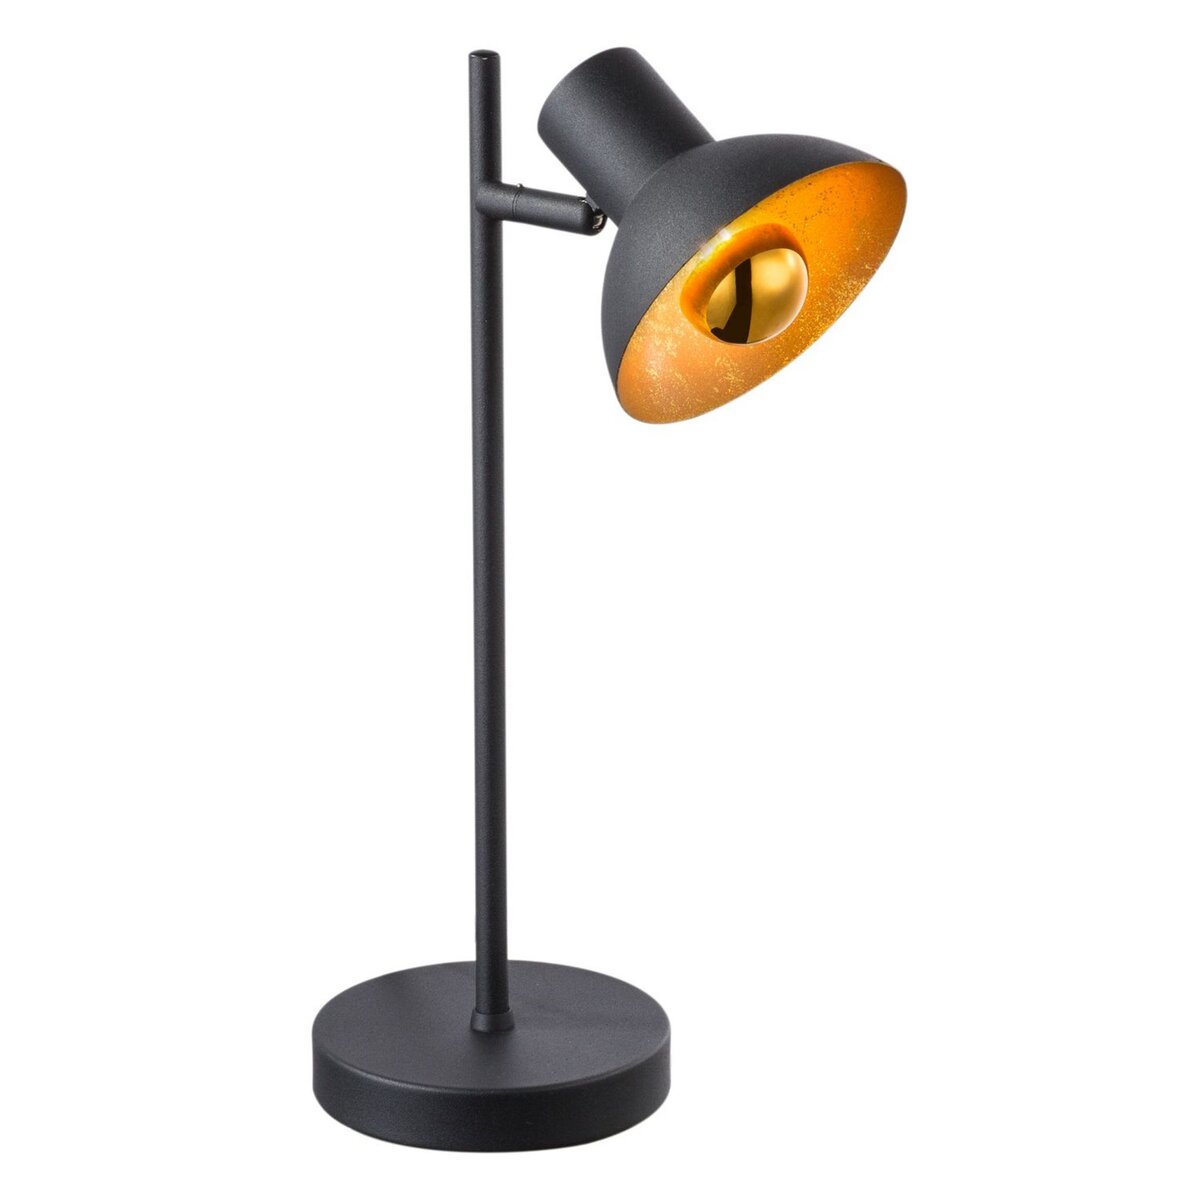 GLOBO Lampe à poser LED design industriel Fillo - Noir et doré